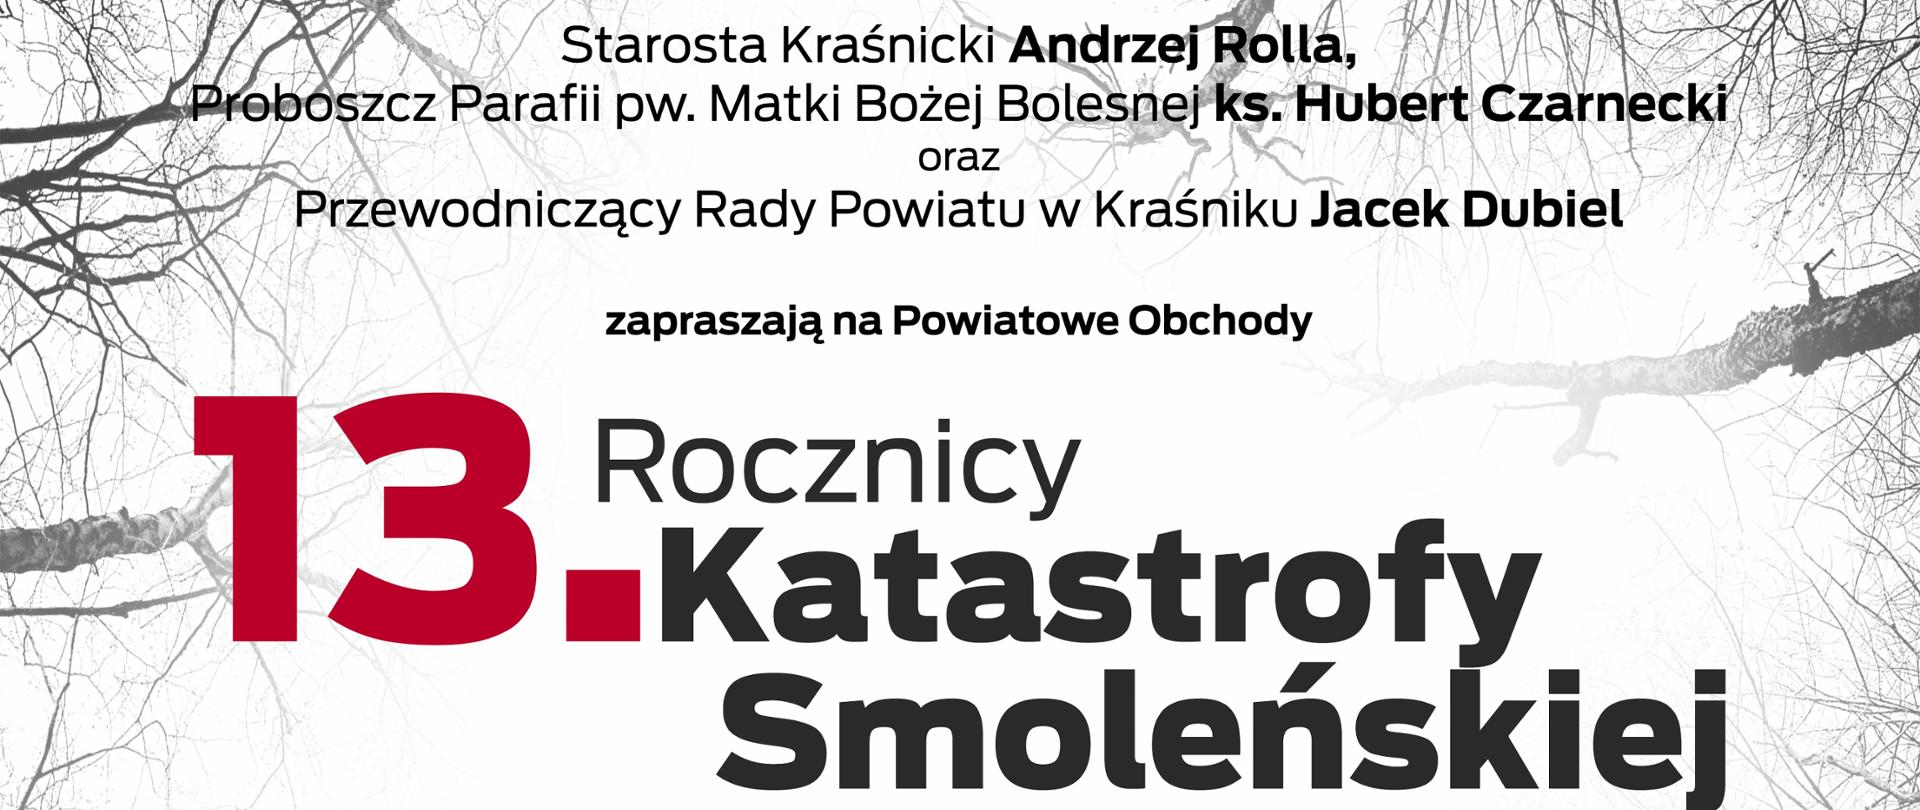 13. rocznica Katastrofy pod Smoleńskiem w Kraśniku - plakat